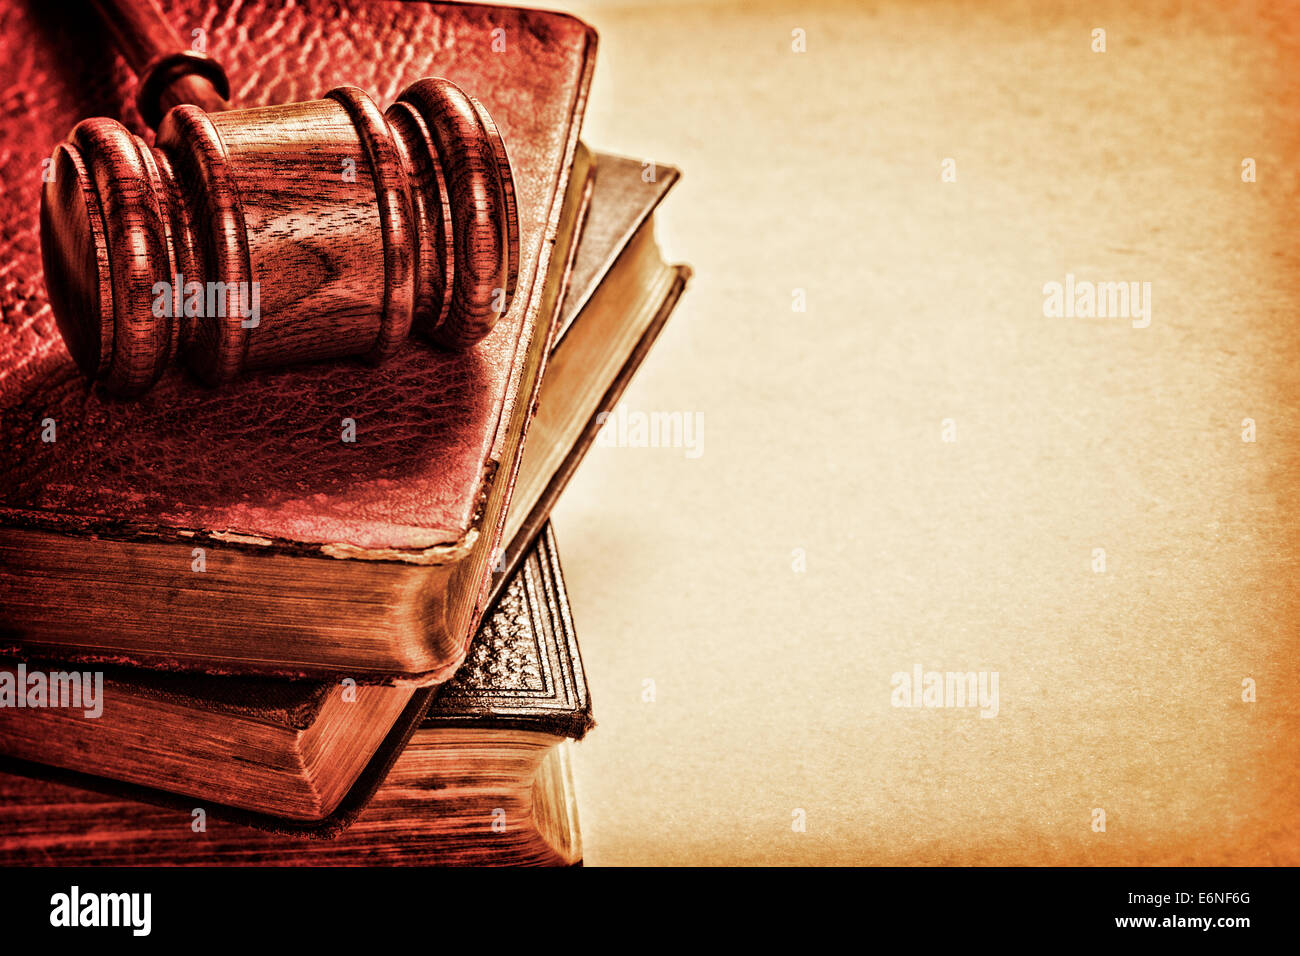 Hammer und alte Bücher - Hammer, einen Stapel Bücher, und Platz für Text auf strukturierten Hintergrund. Stockfoto